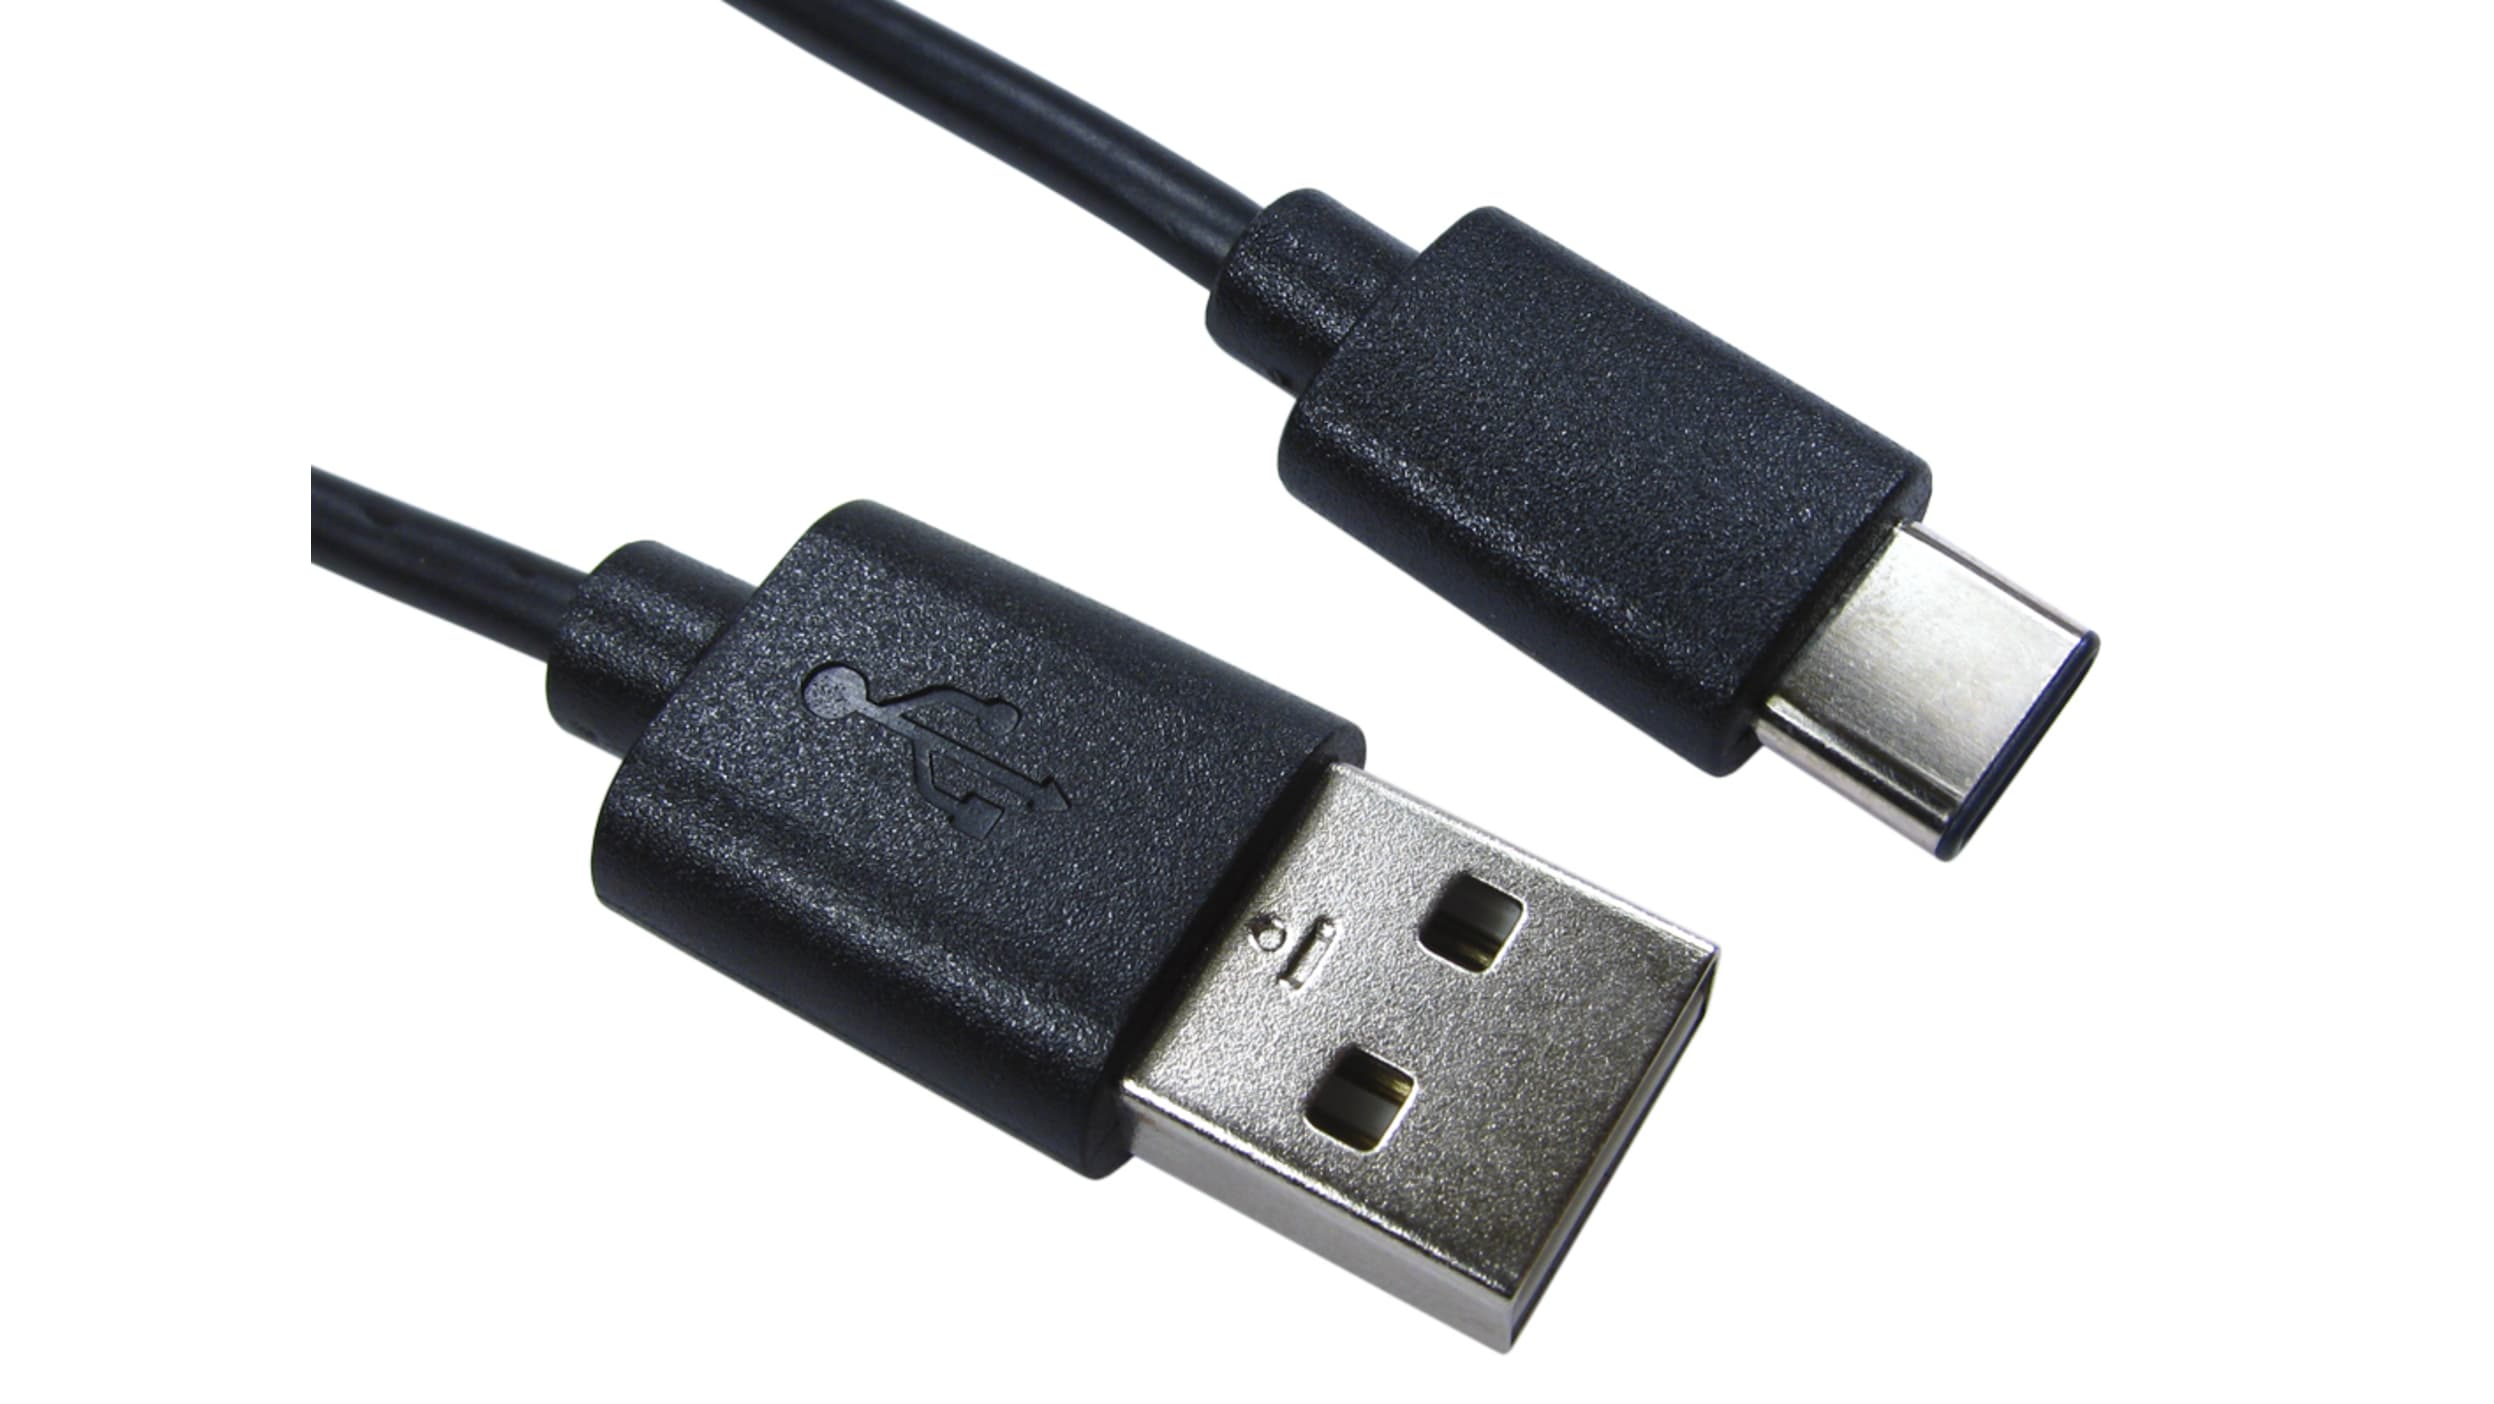 Hama Ladekabel USB-C - USB-C 3 m kaufen